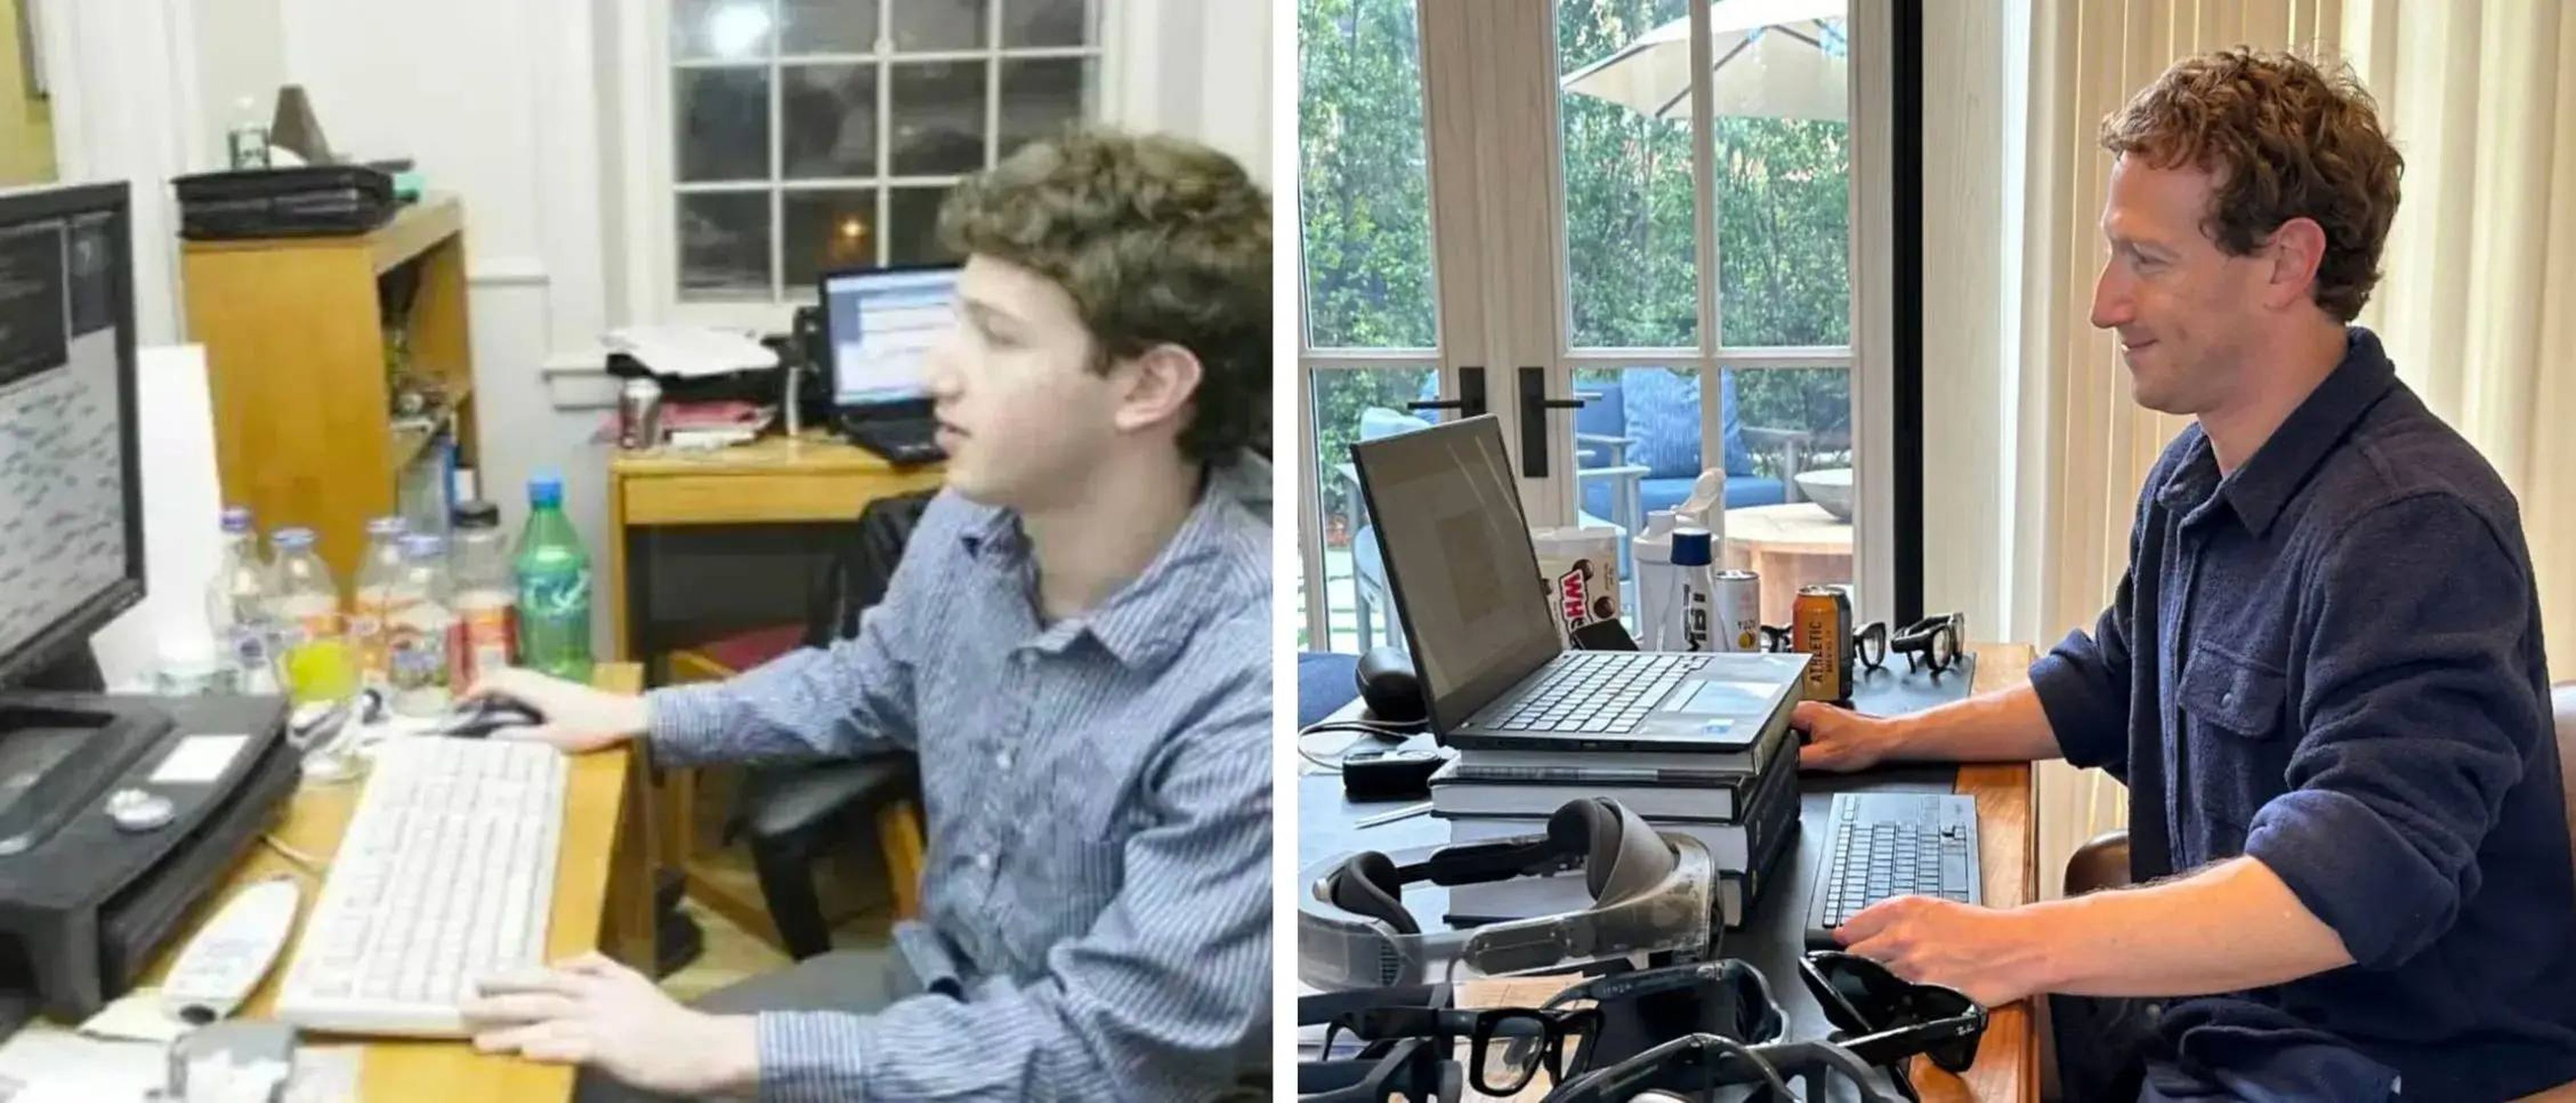 Mark Zuckerberg en los inicios de la fundación de Facebook (izquierda) y Mark Zuckerberg en la actualidad (derecha).